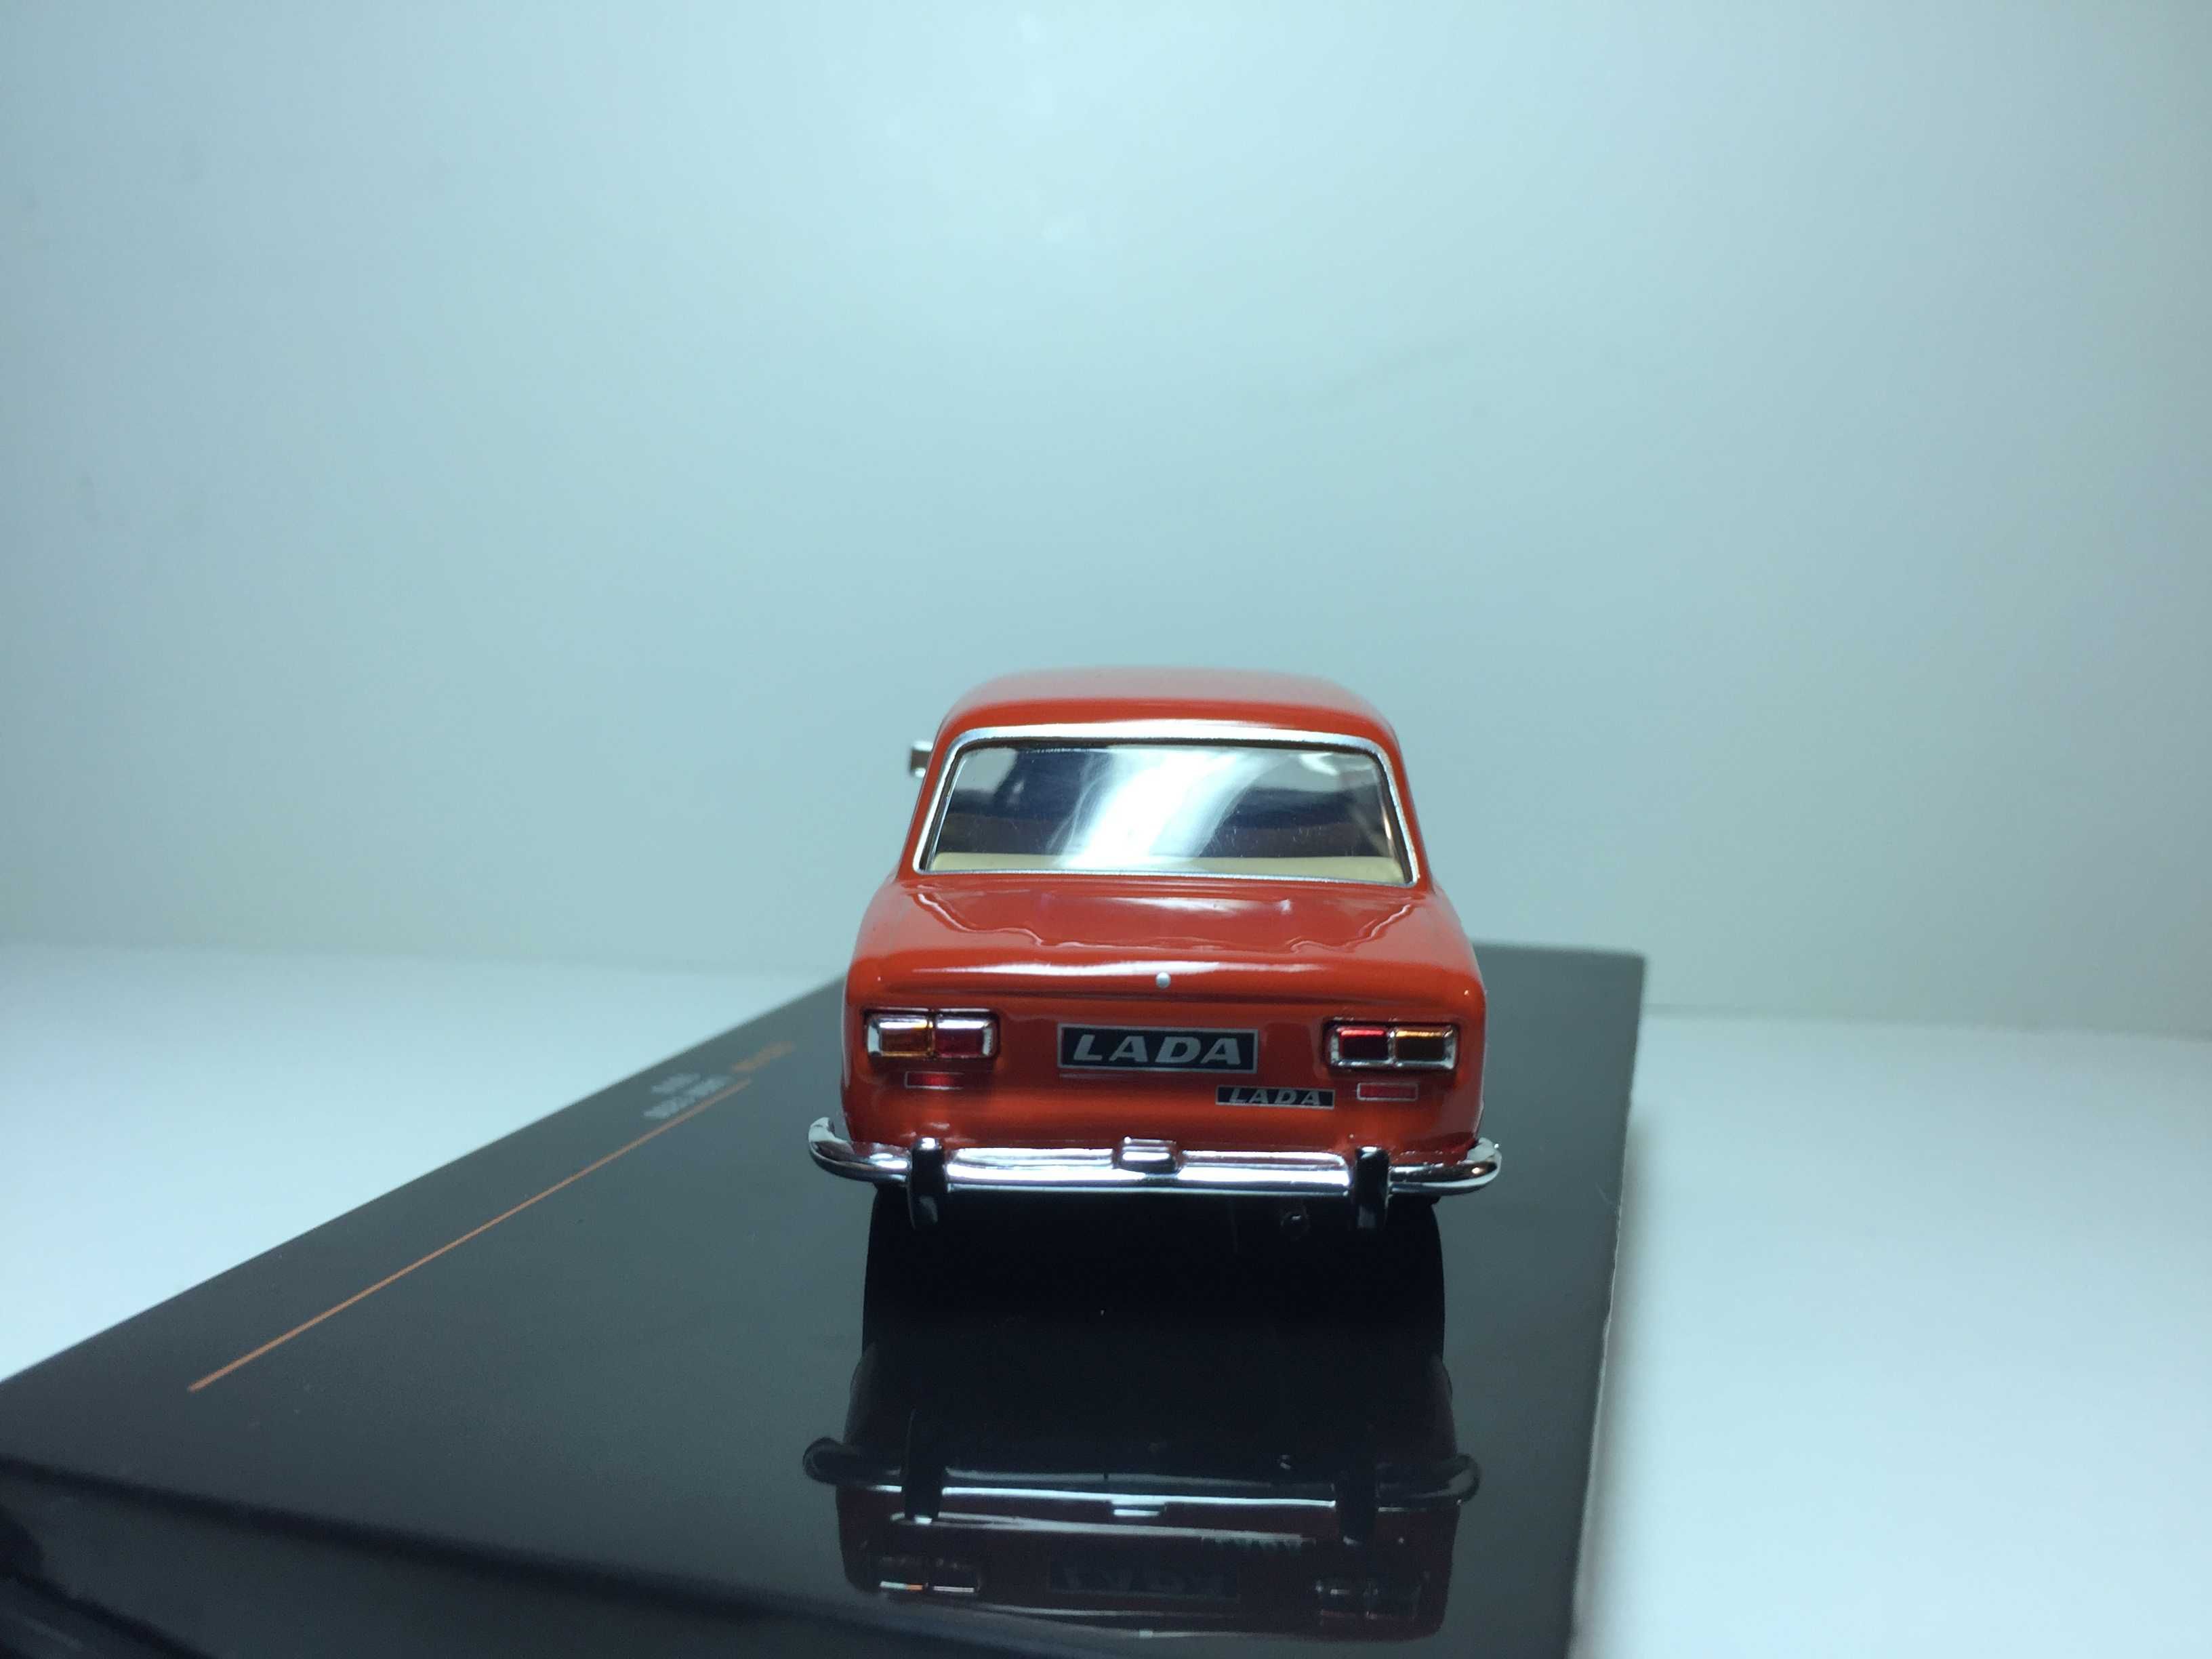 ВАЗ-2101/Lada-1200 1970 г. 1/43 IXO Models (CLC 313 N)